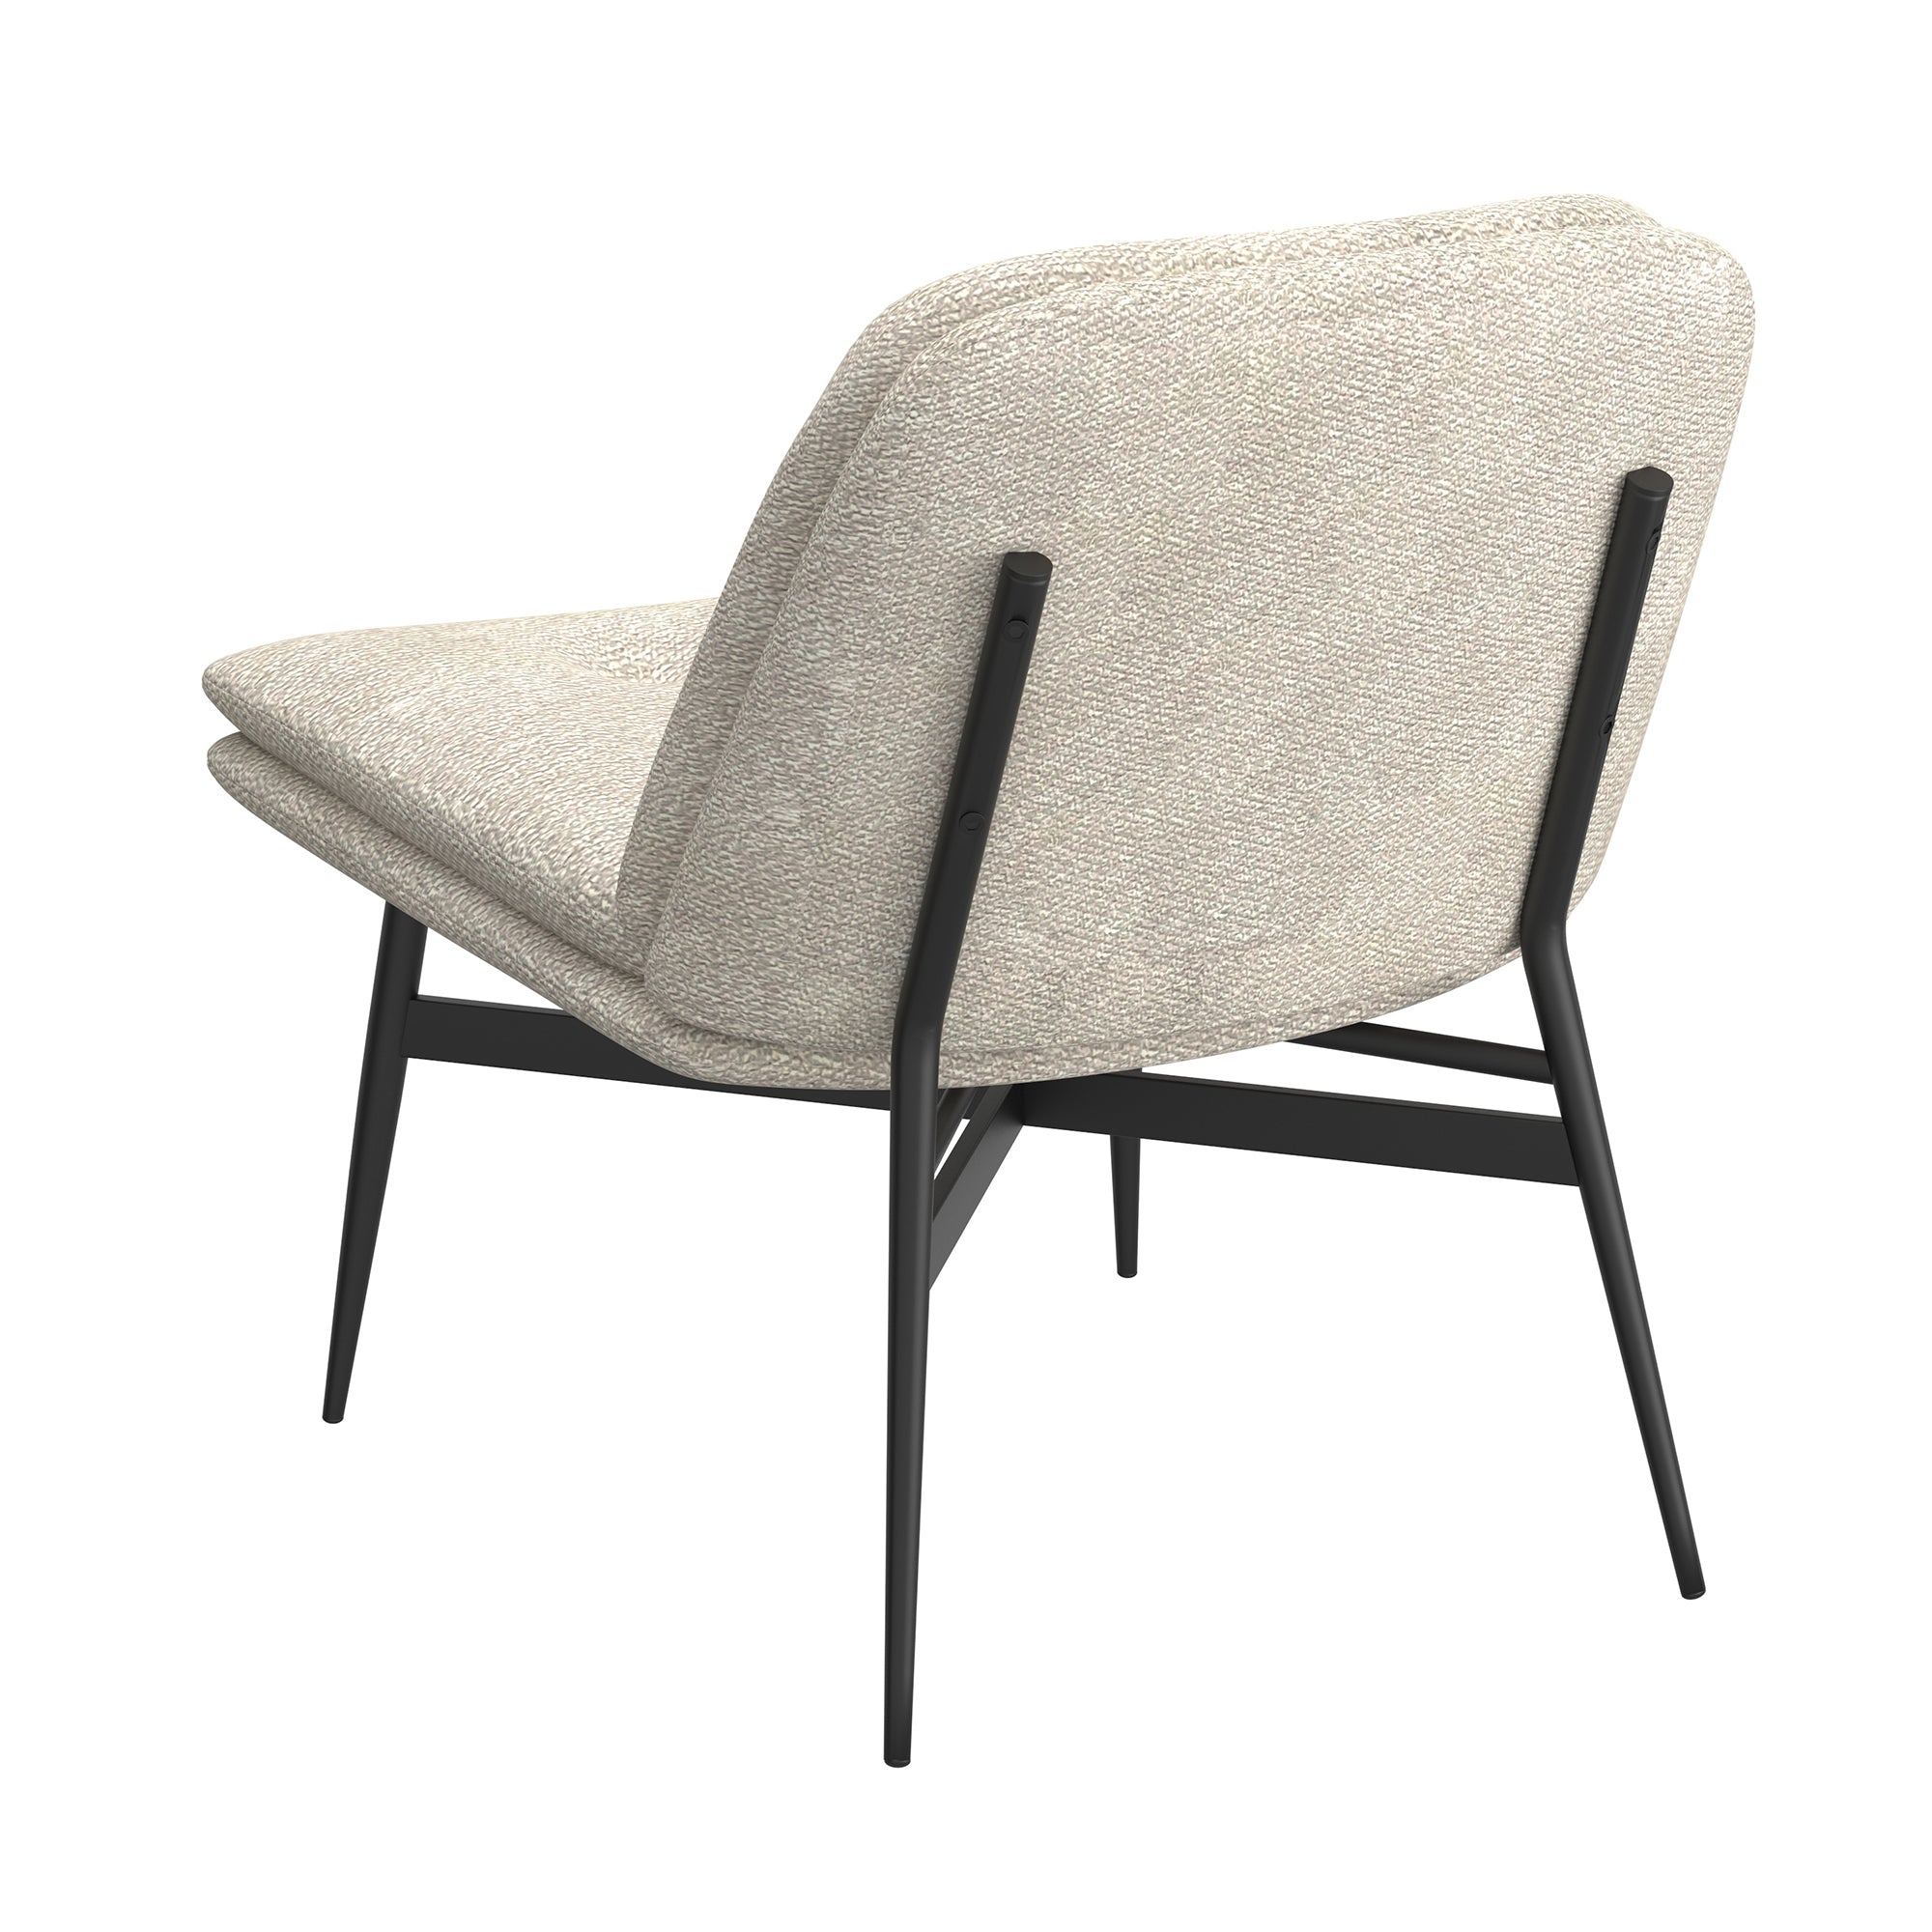 Aurora Fabric/Metal Accent Chair - Beige/Black